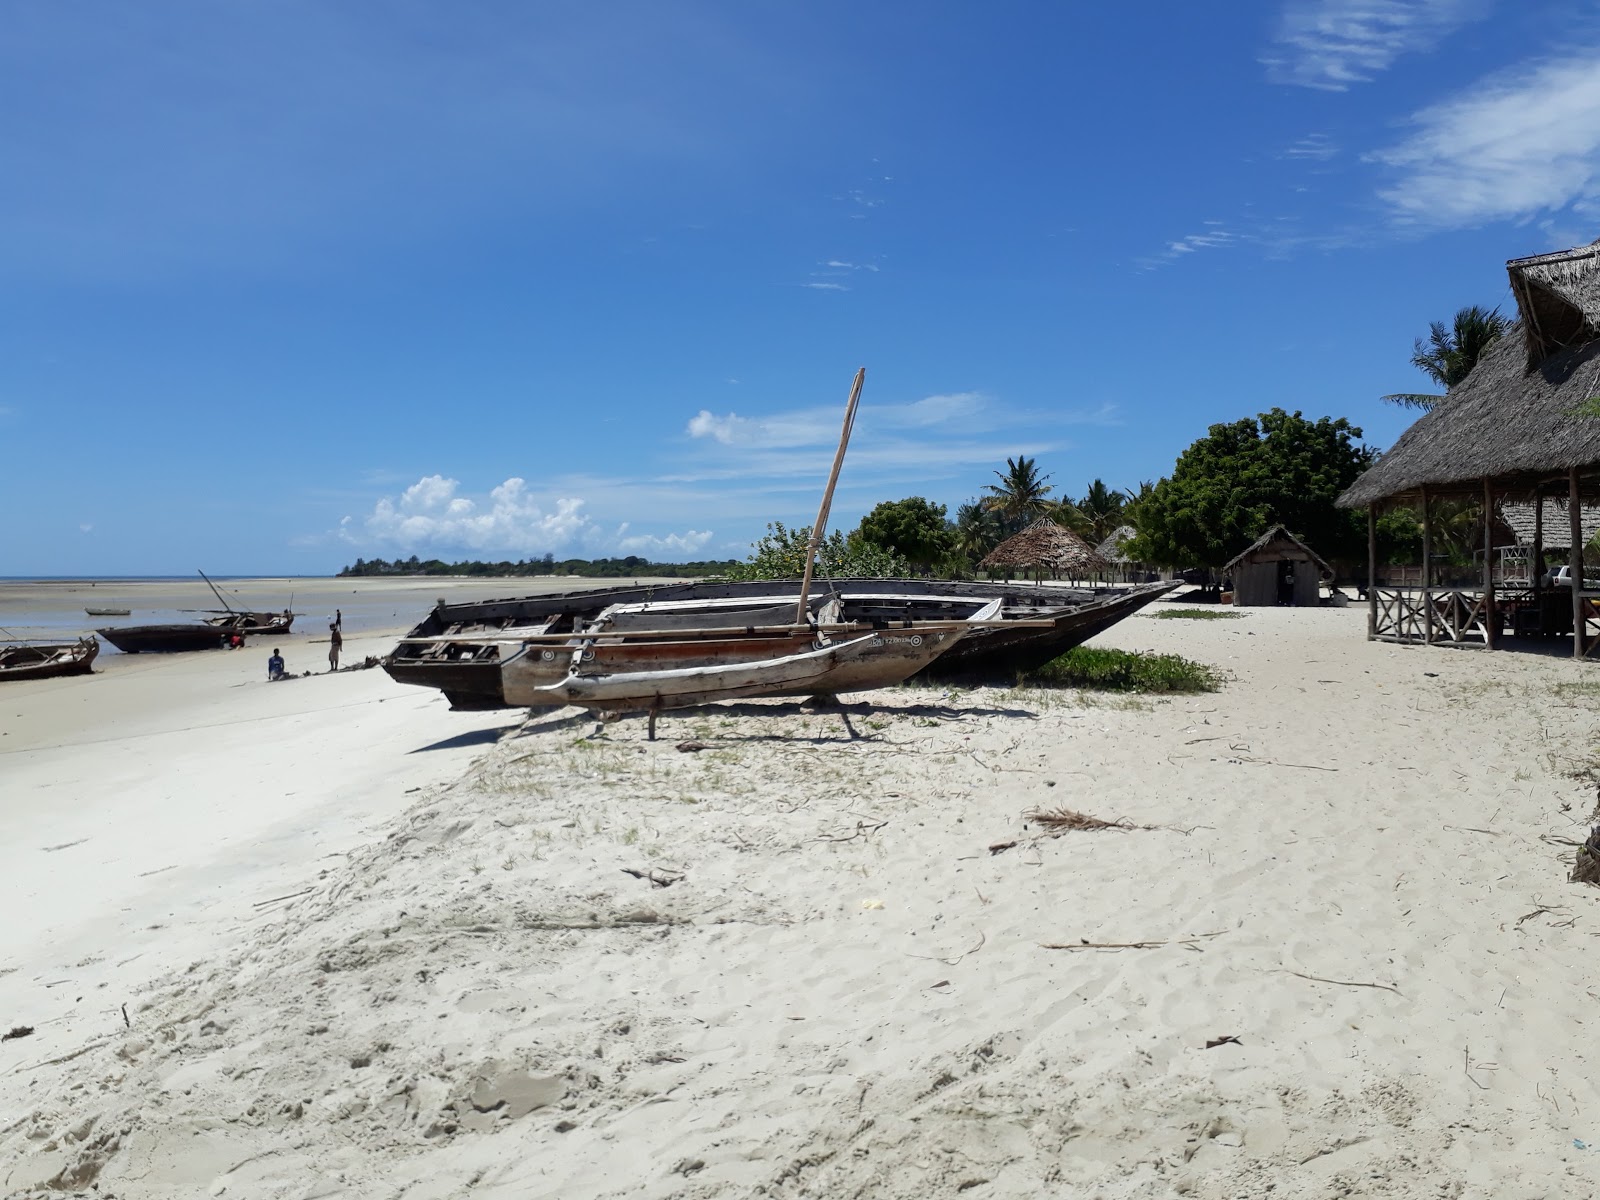 Zdjęcie Mahaba Beach - popularne miejsce wśród znawców relaksu